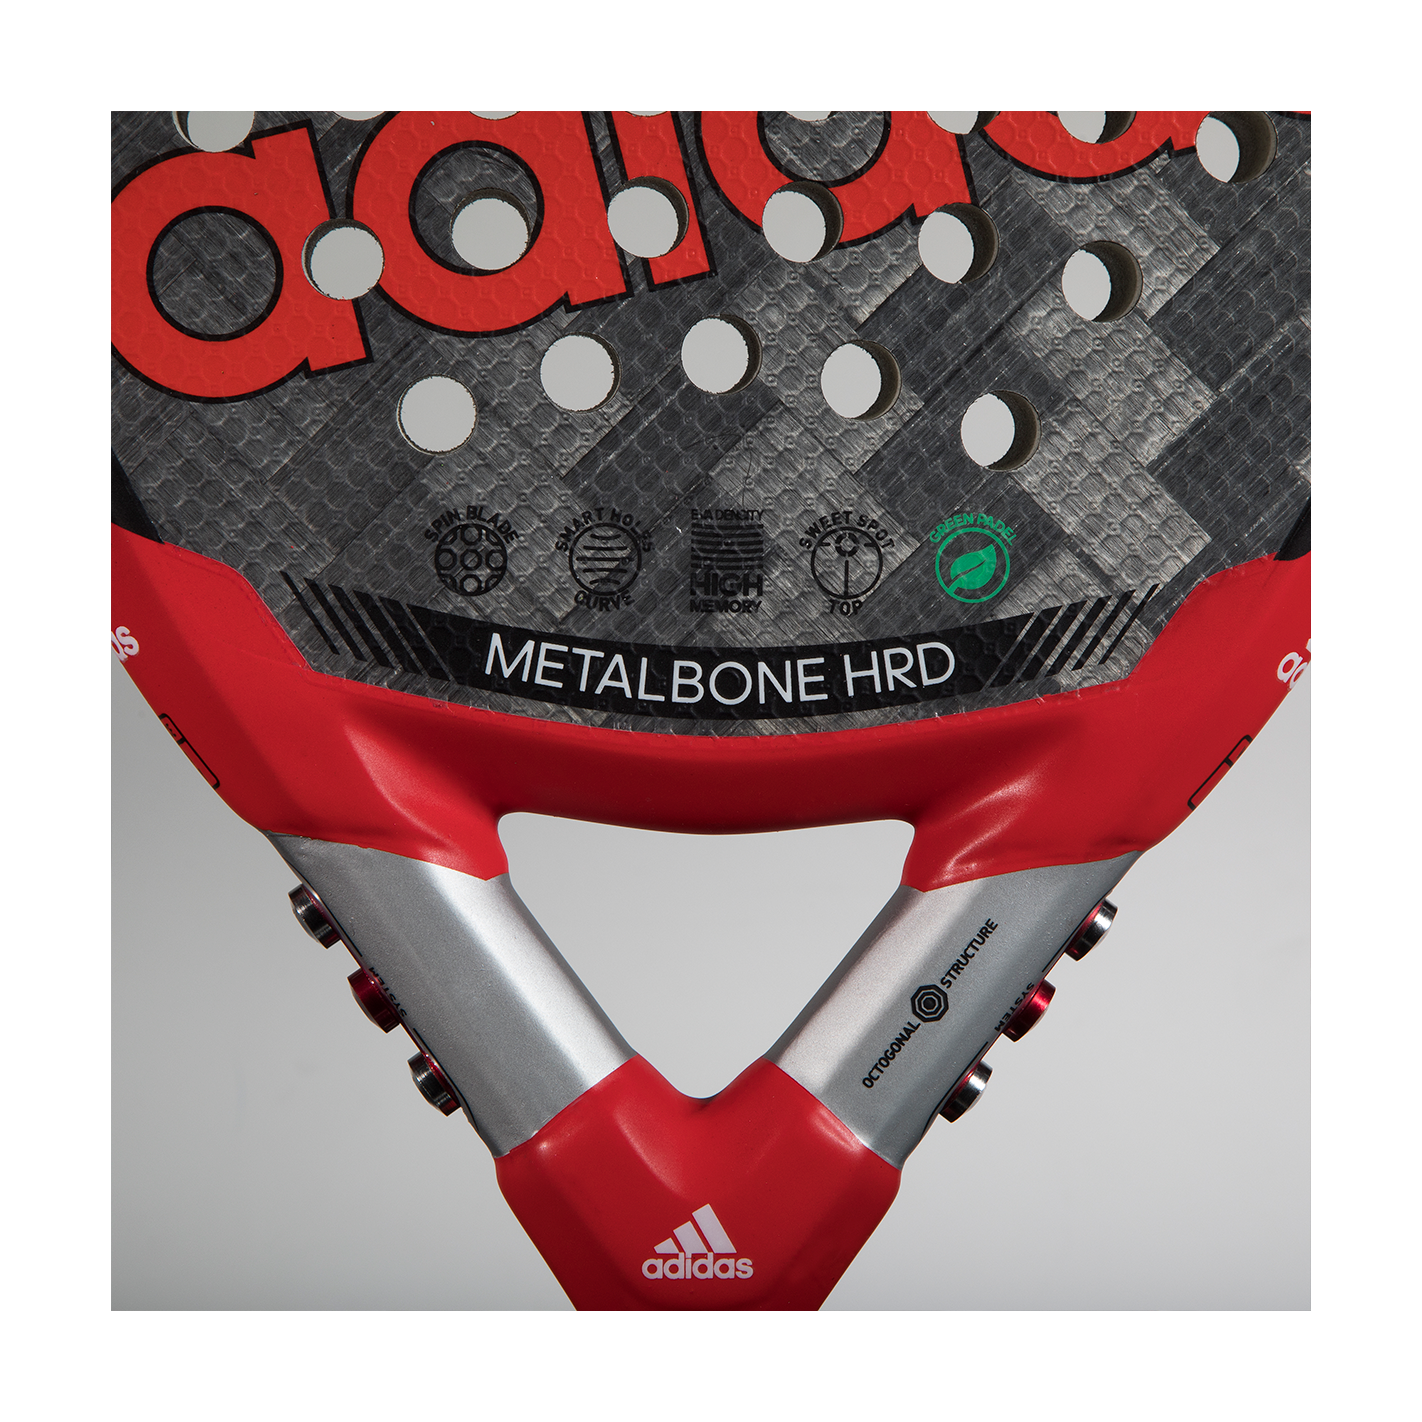 Adidas Metalbone HRD 3.1 Padel Racket